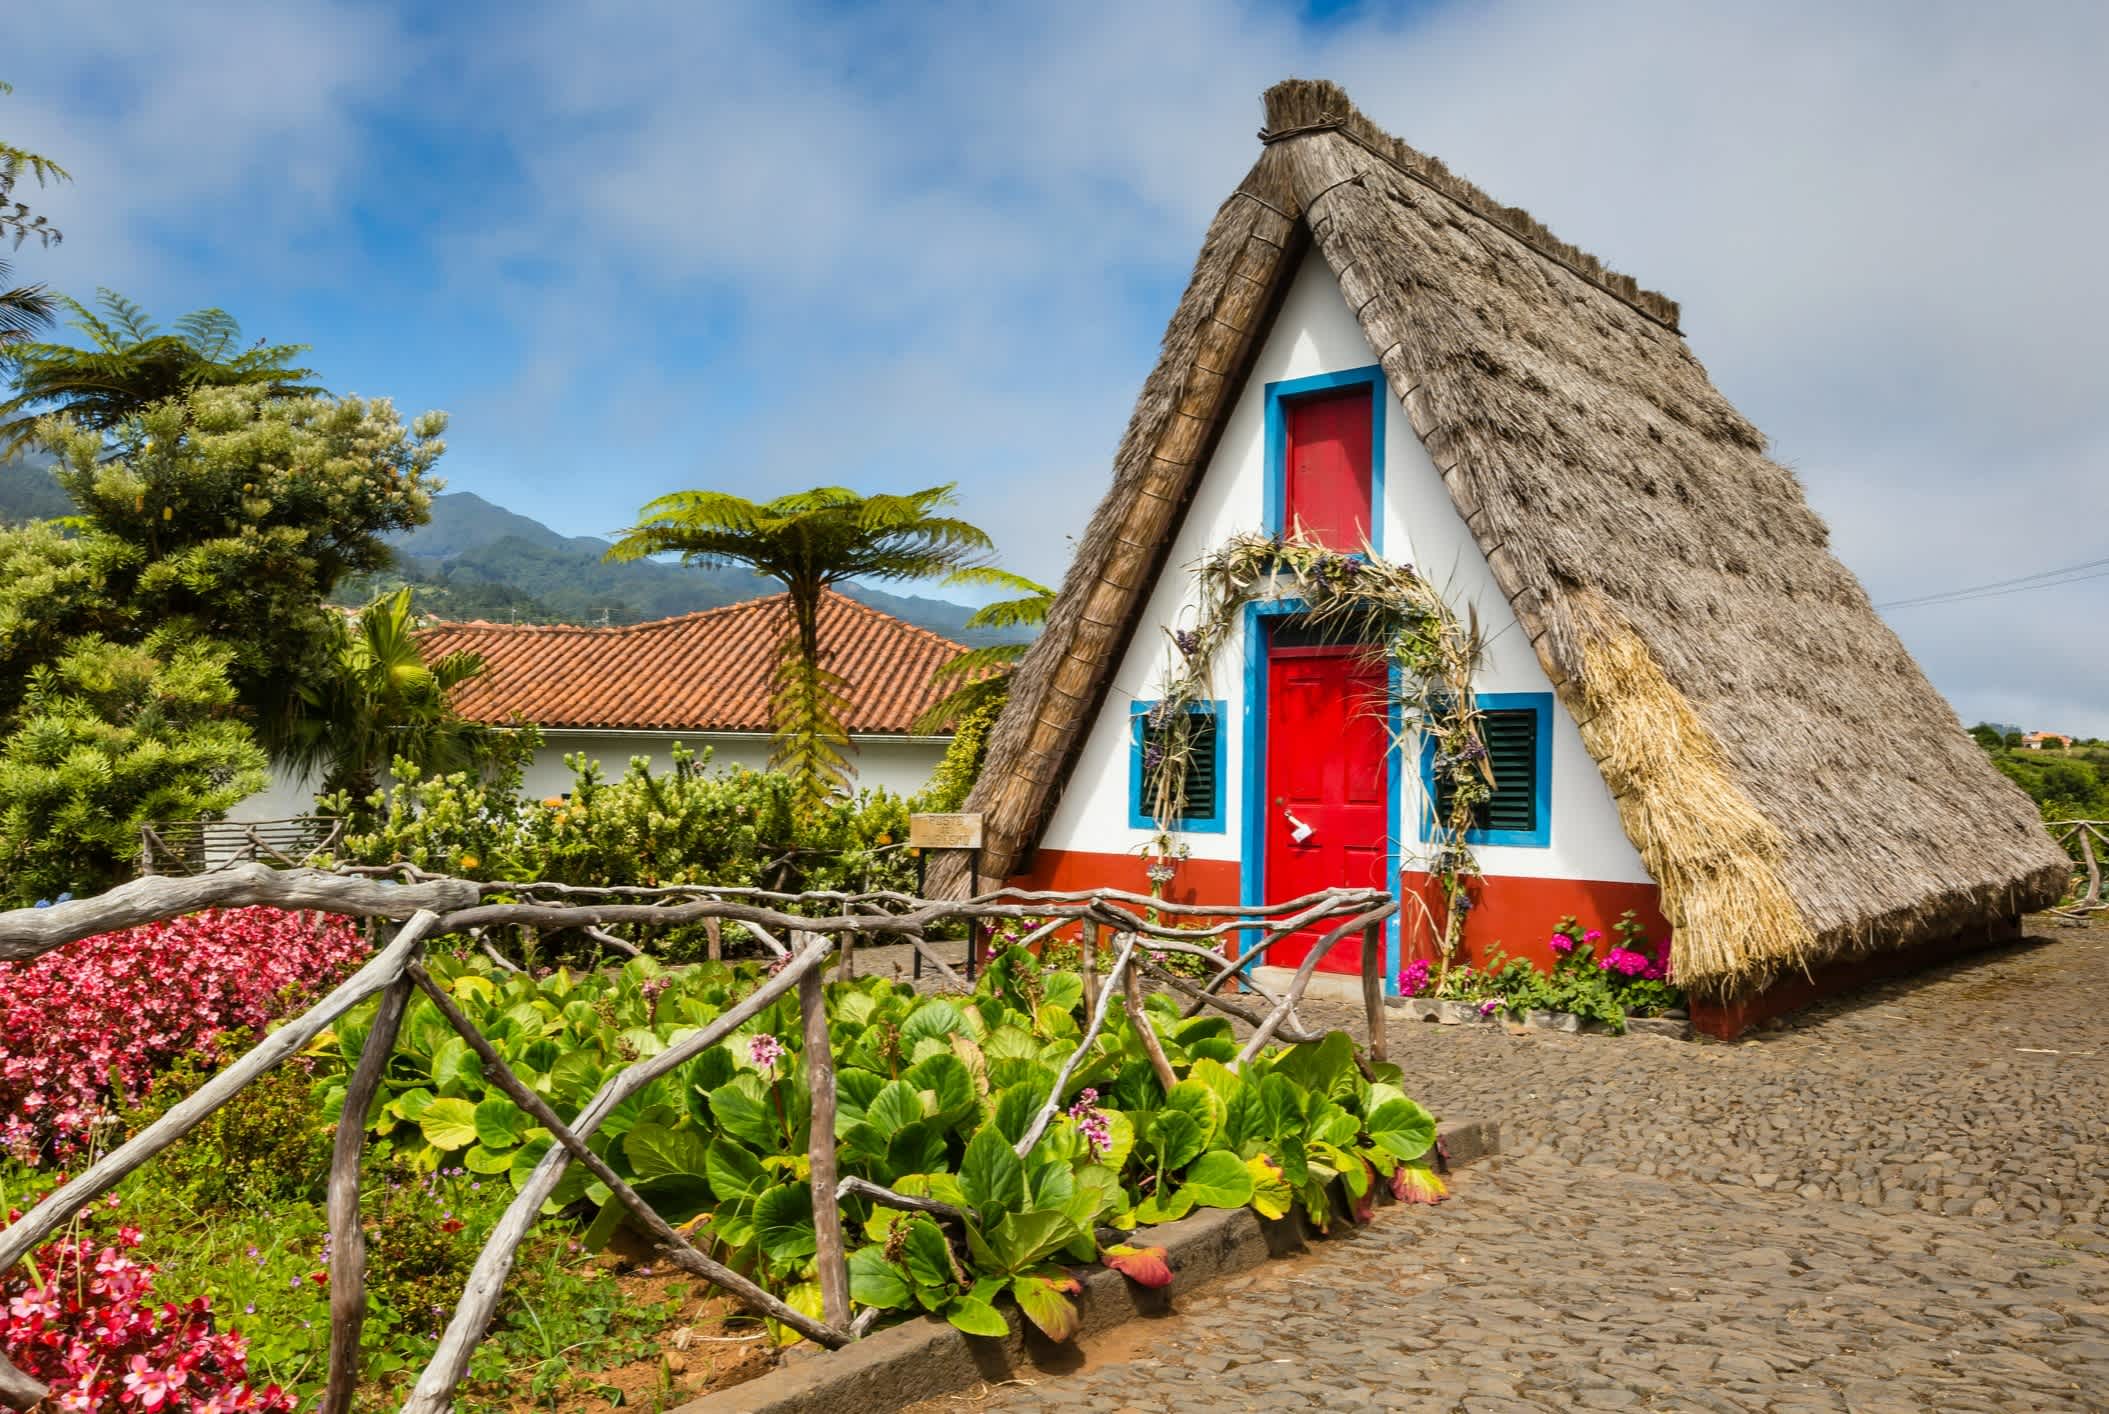 Ein traditionelles ländliches Haus in Santana, Madeira, Portugal.

